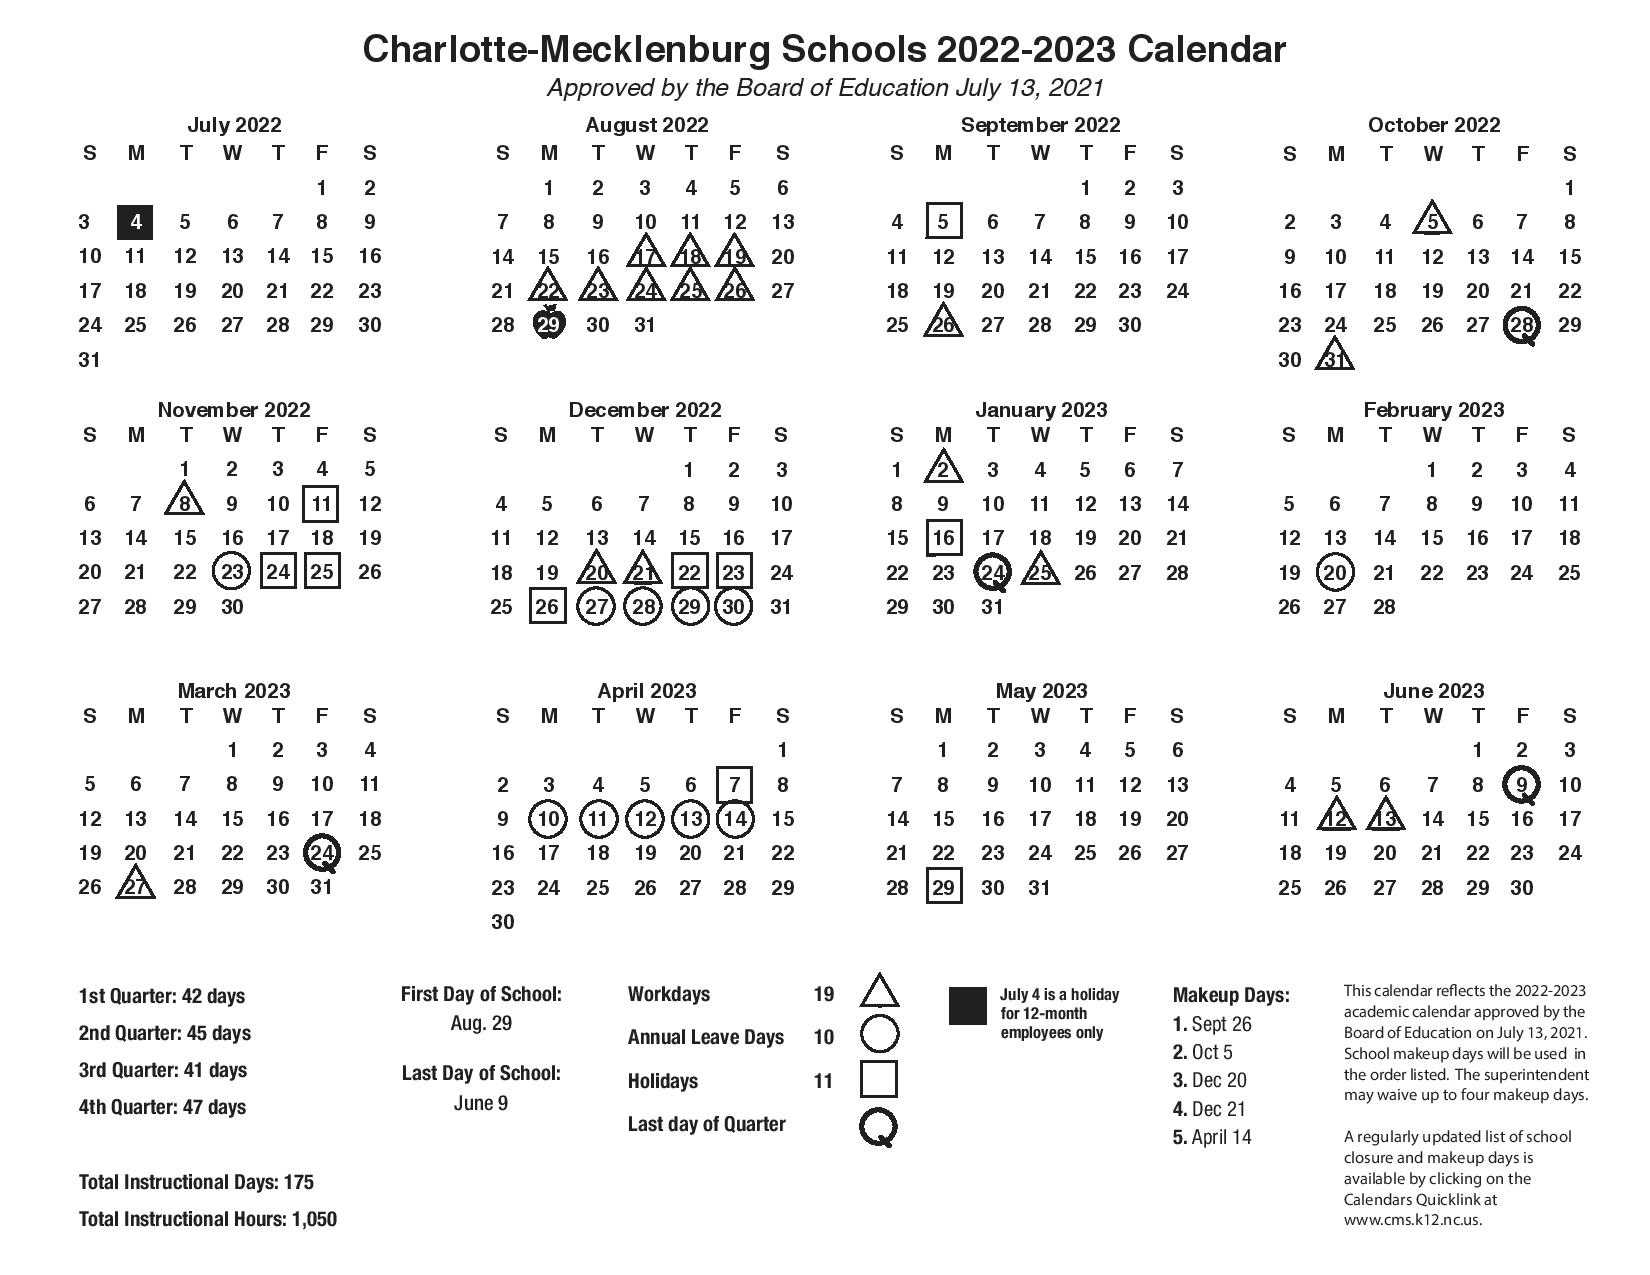 CMS Schools Calendar 2022-2023 (Charlotte-Mecklenburg Schools) - Public